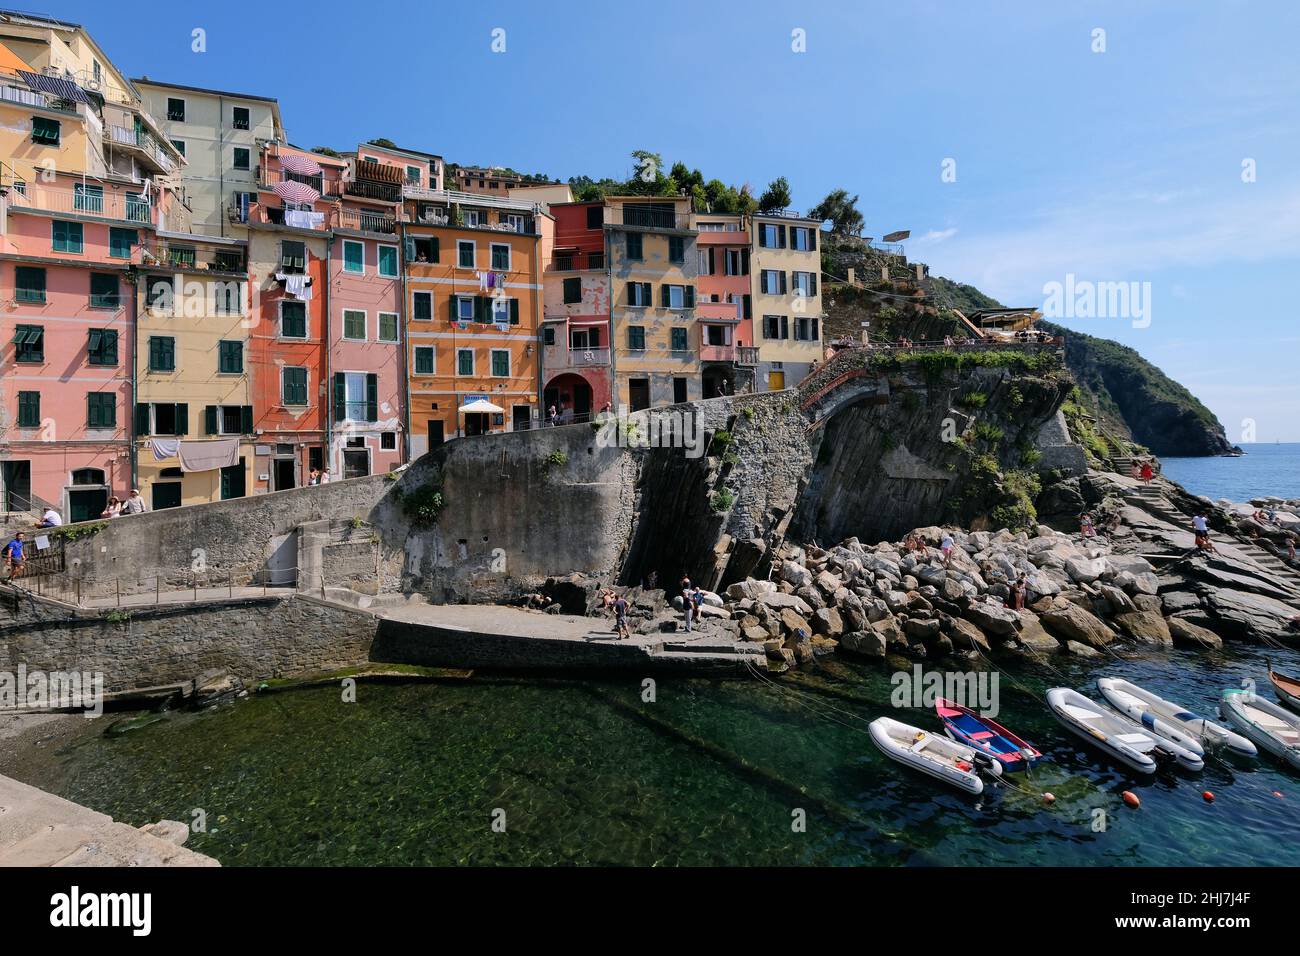 Riomaggiore, uno dei paesi delle cinque Terre sulla Riviera Italiana. Foto Stock